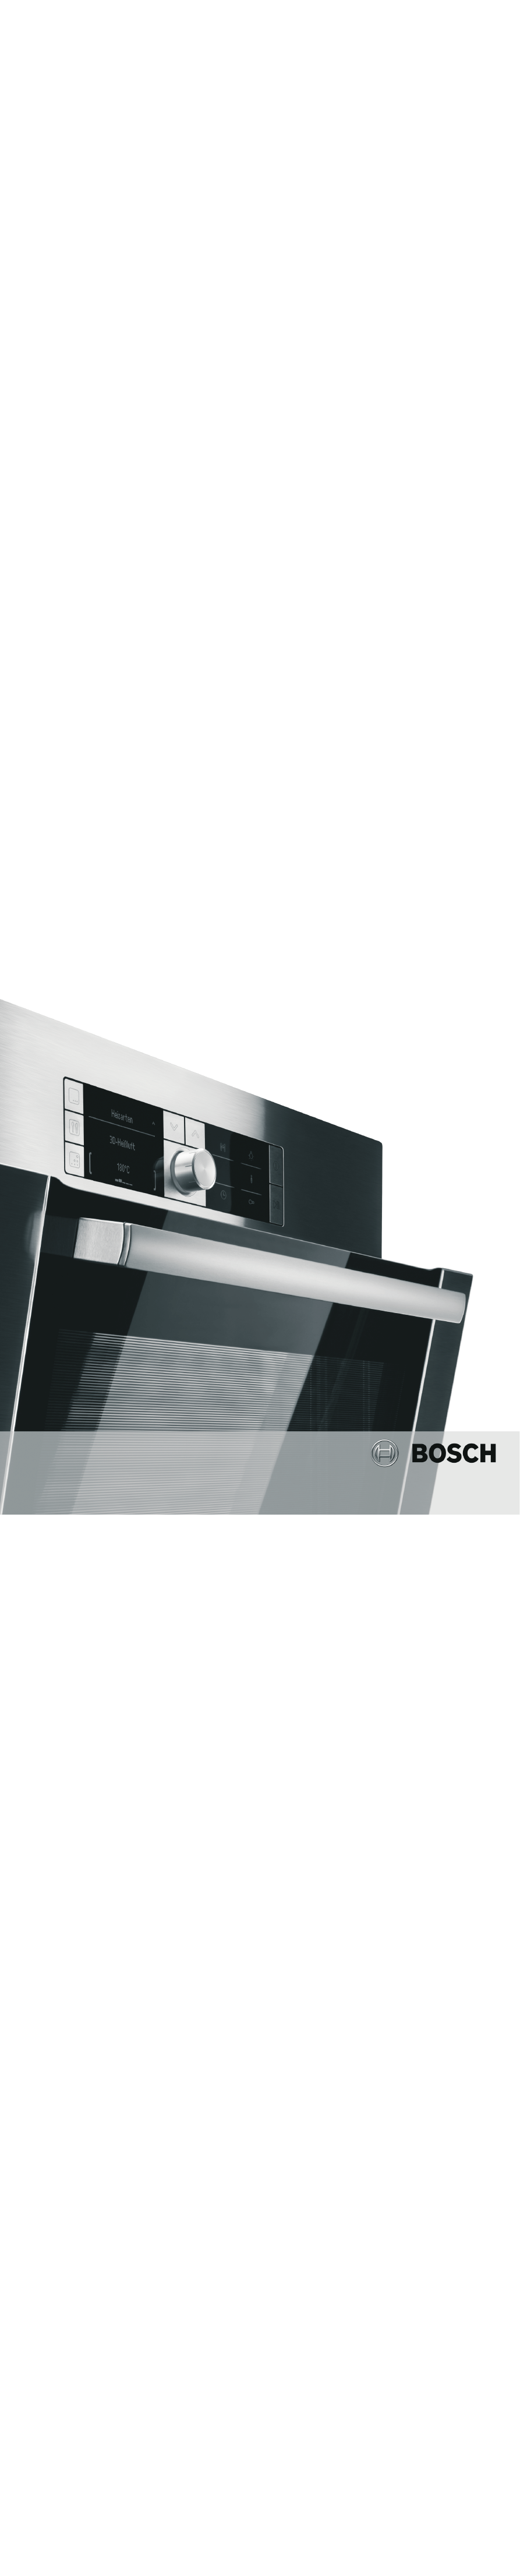 Bosch духовой шкаф руководство